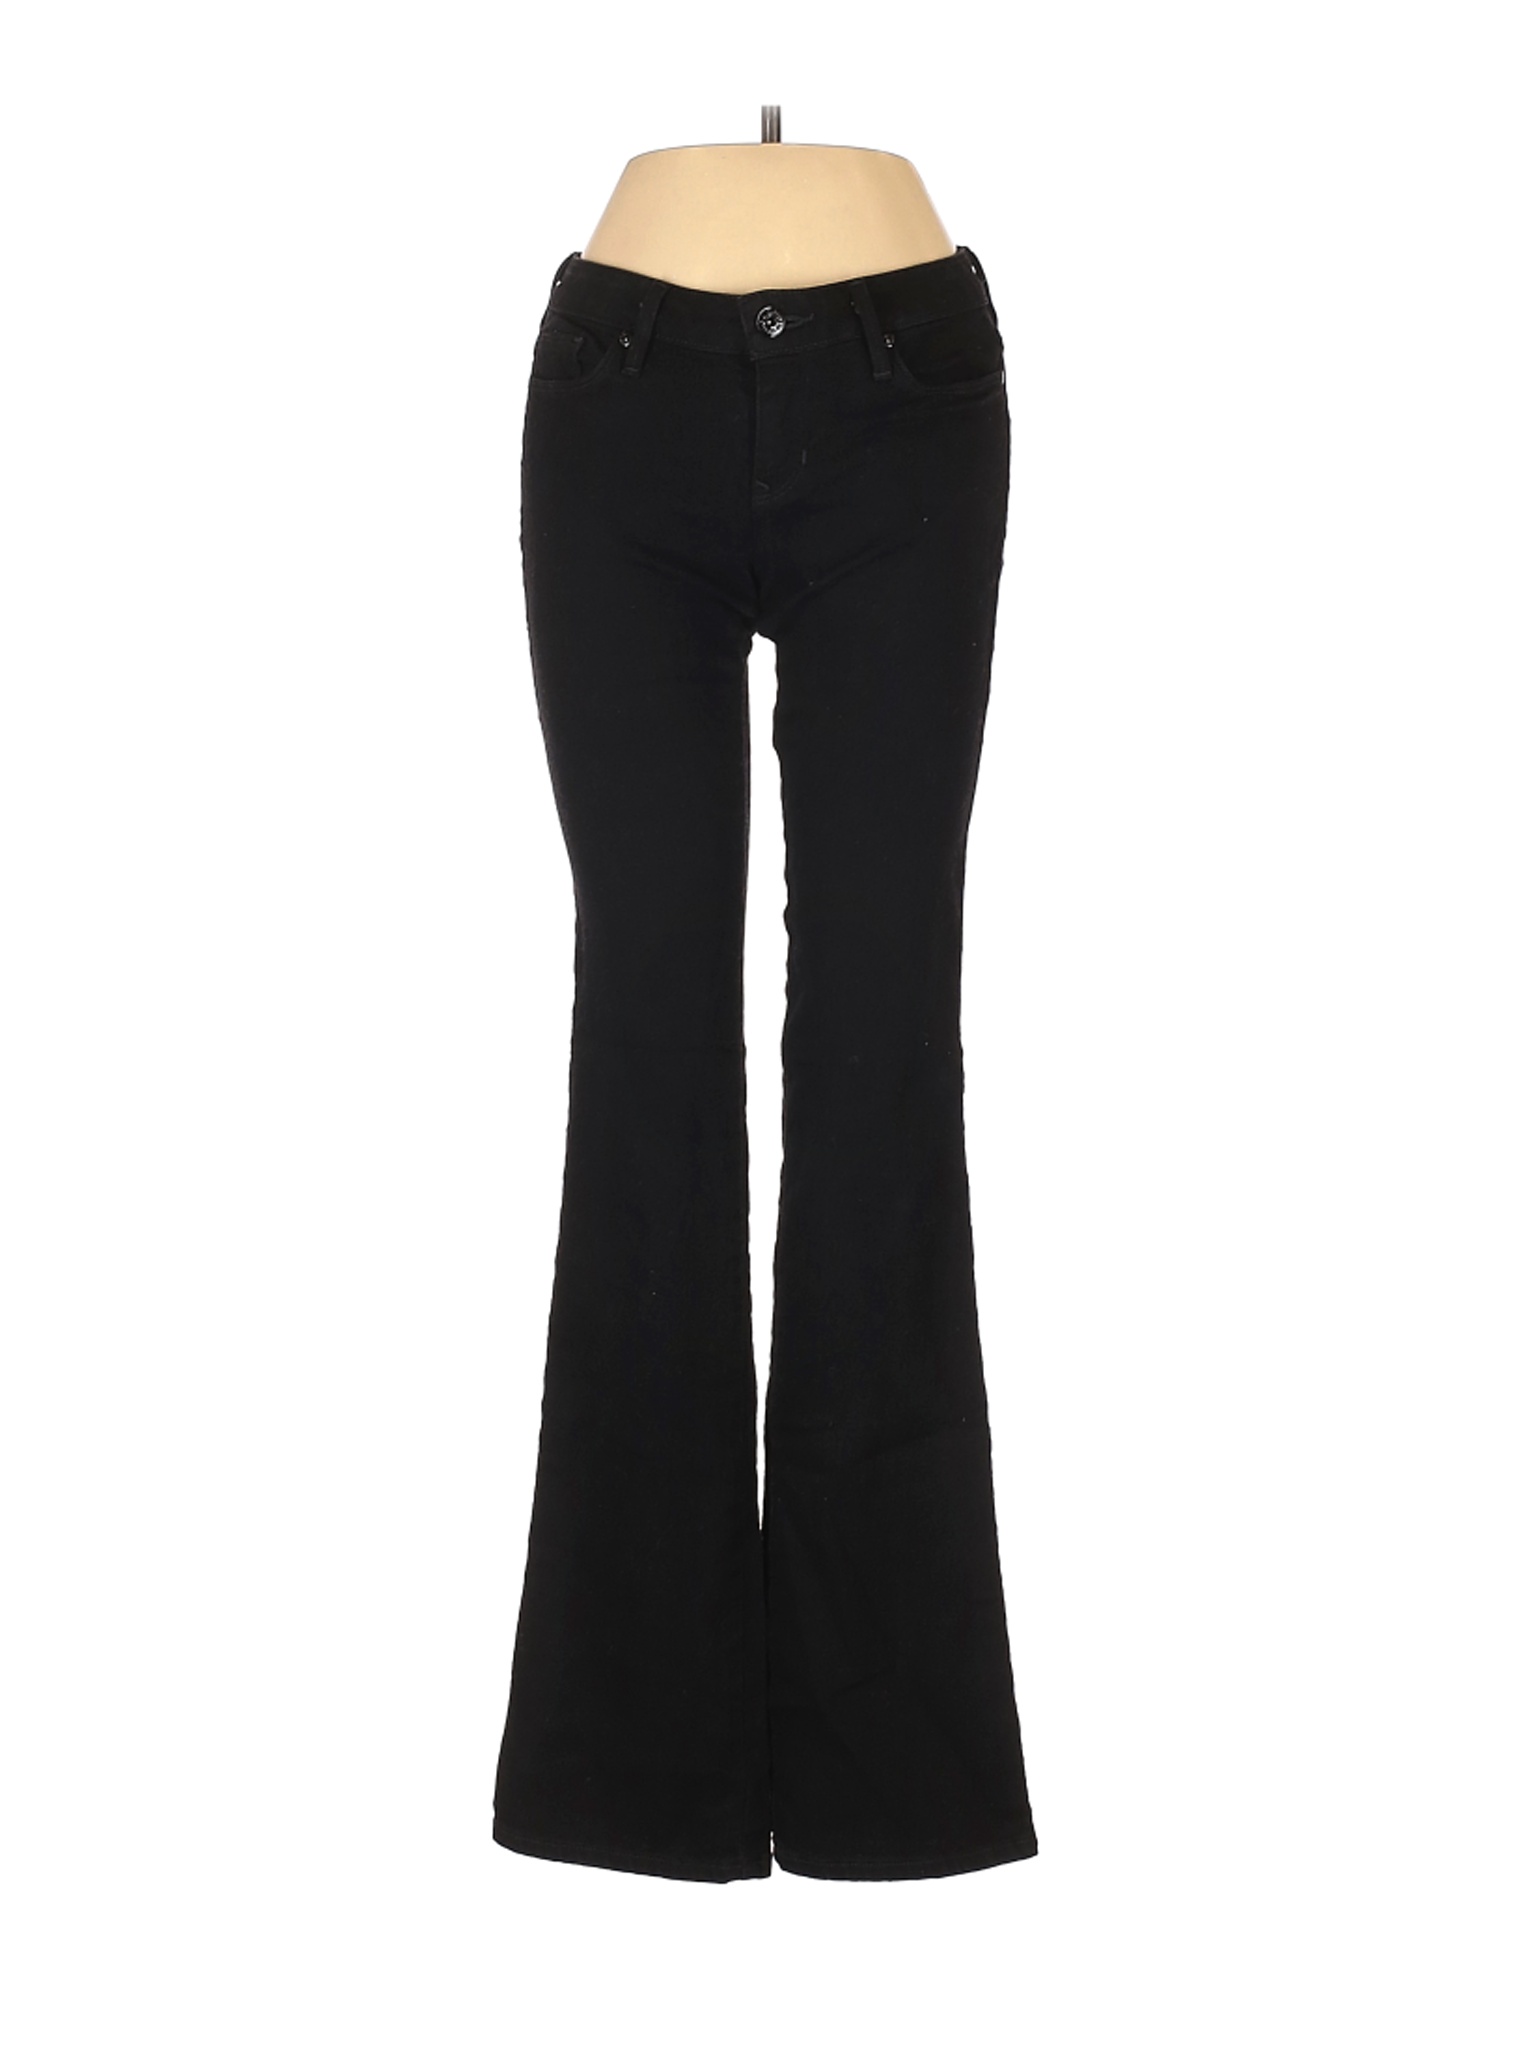 G by GUESS Women Black Jeans 25W | eBay